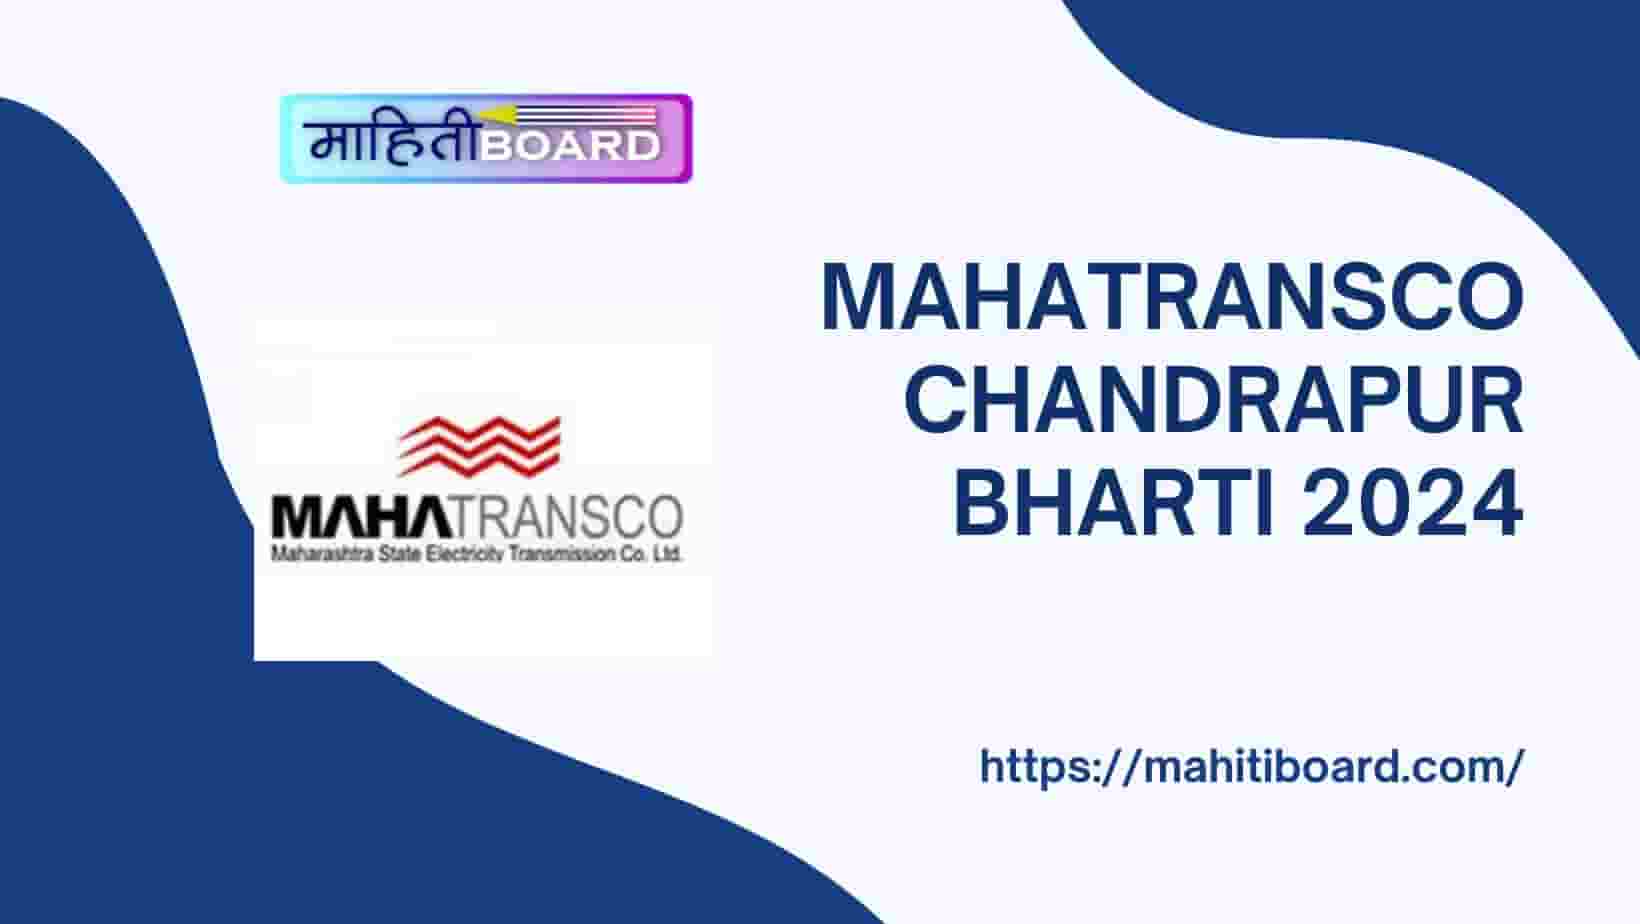 Mahatransco Chandrapur Bharti 2024